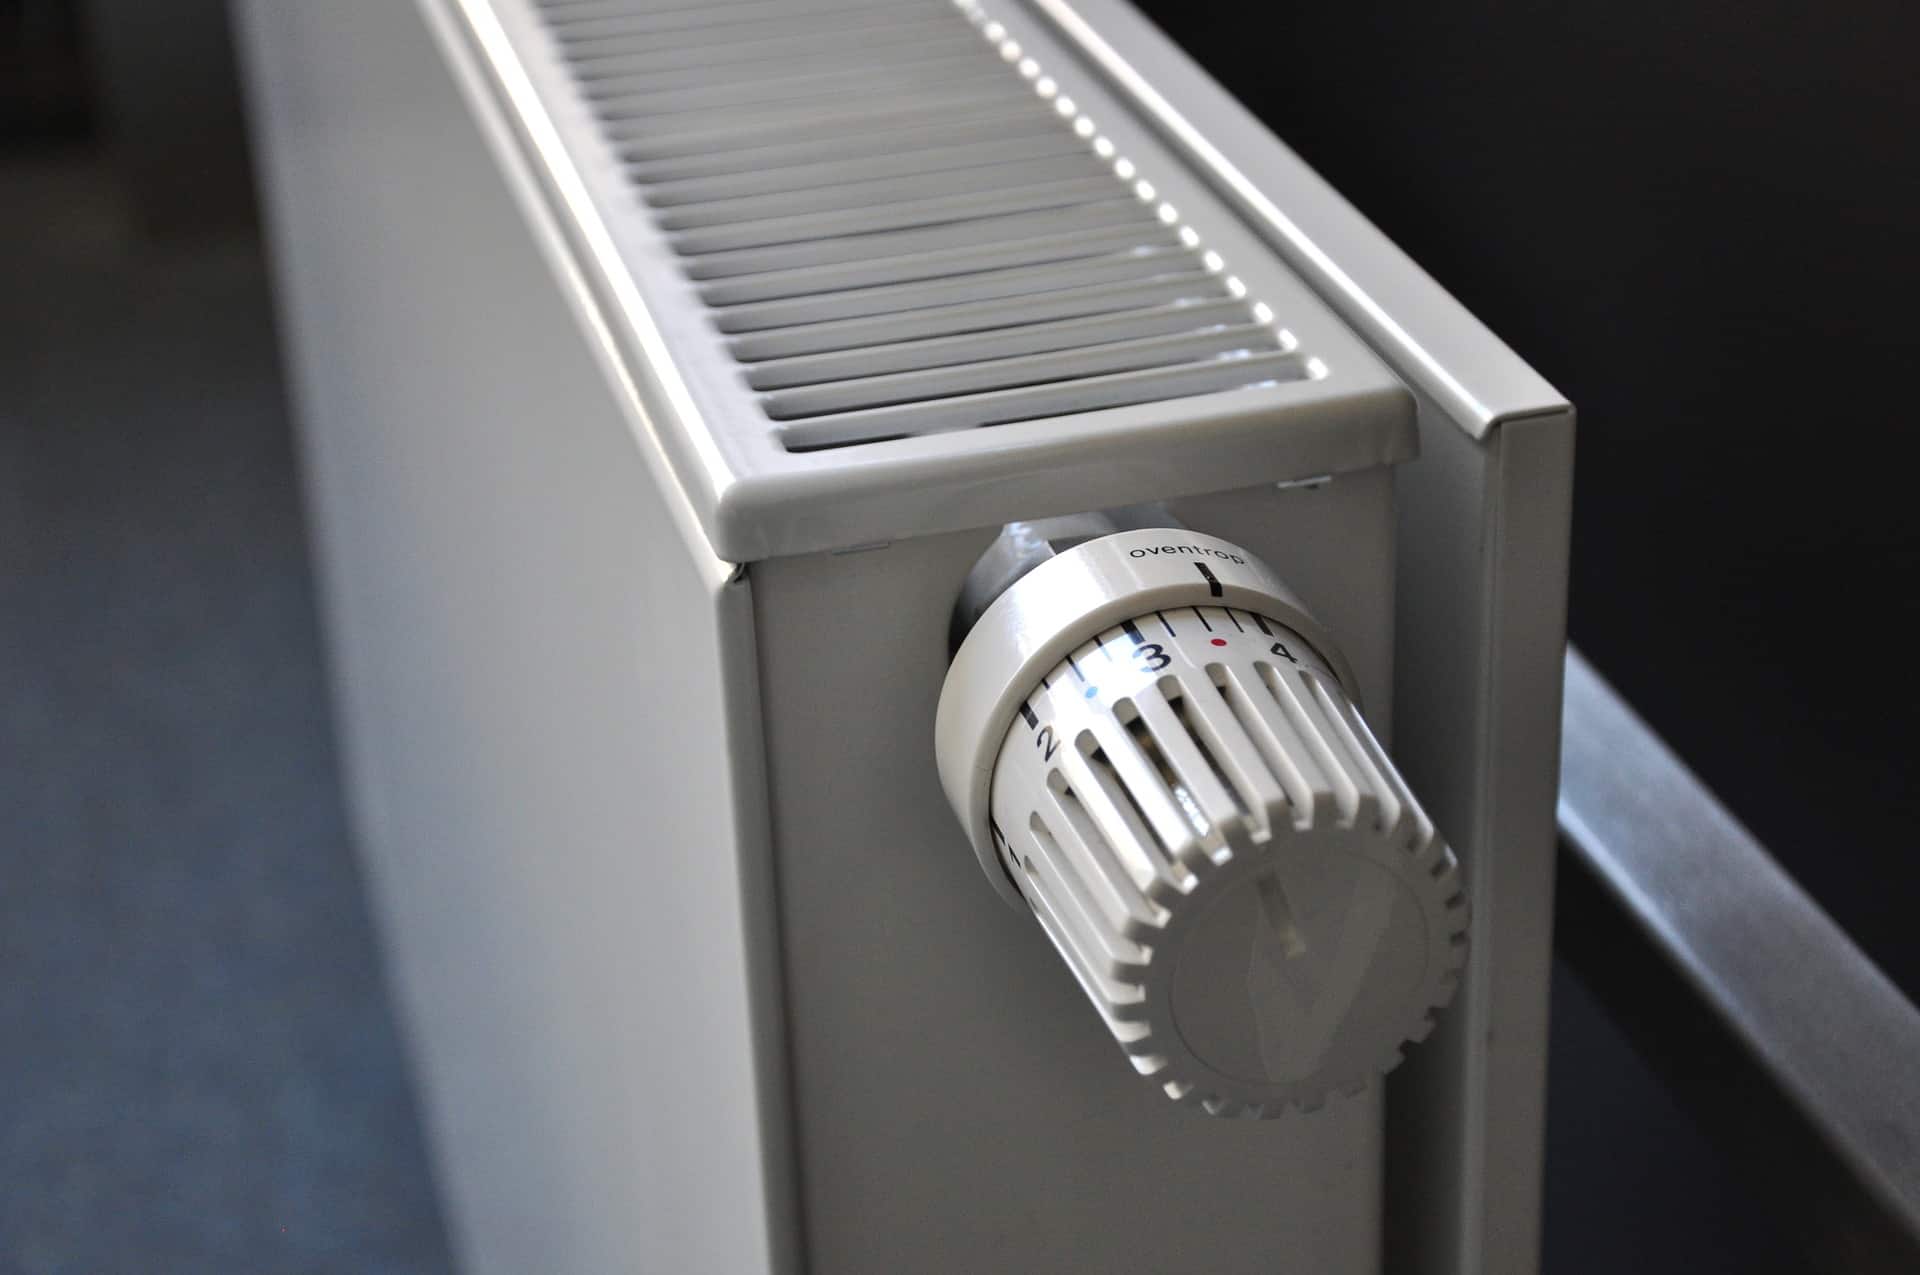 Thermostat secteur connecté et commande vocale pour 2 appareils